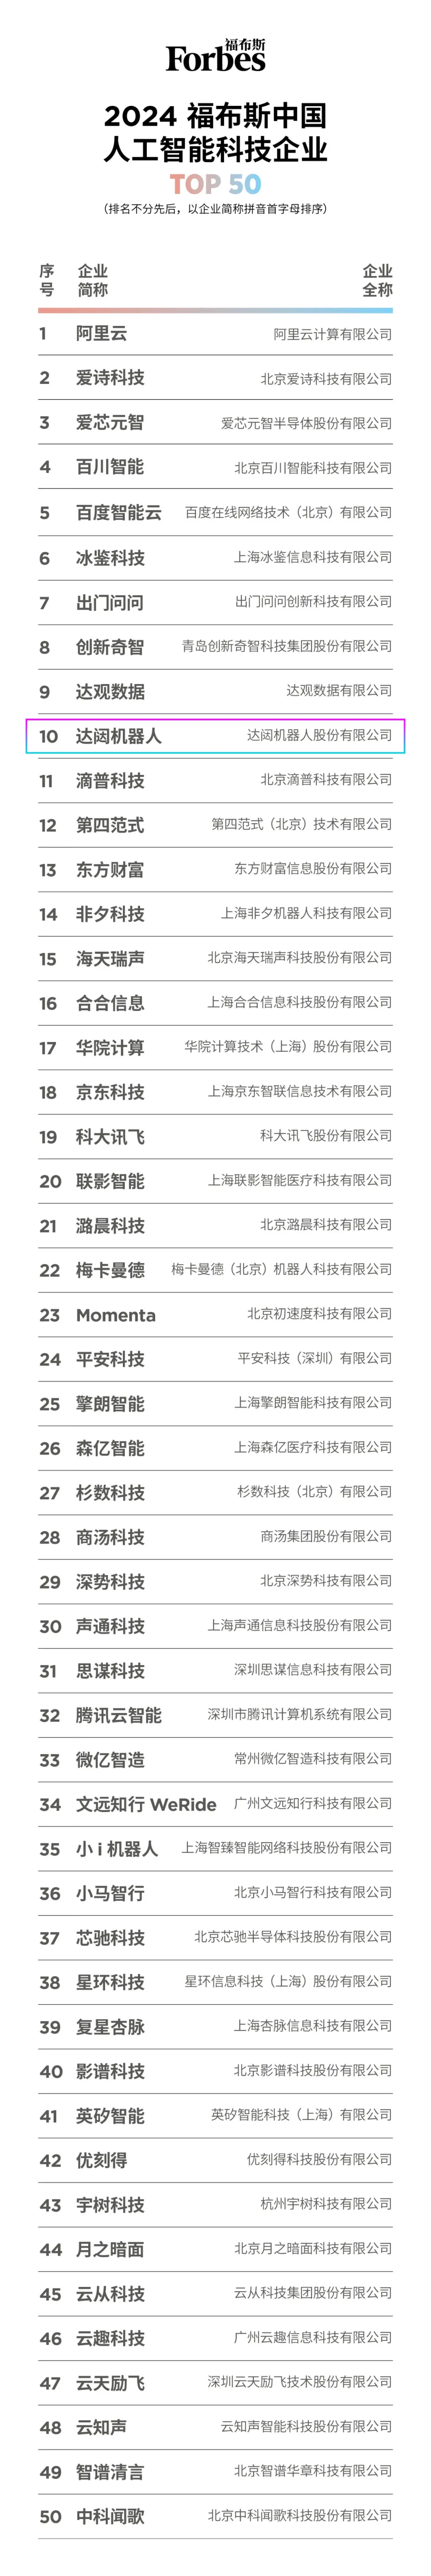 达闼荣登“2024福布斯中国人工智能科技企业TOP 50”，黄晓庆获评“人工智能影响力人物”